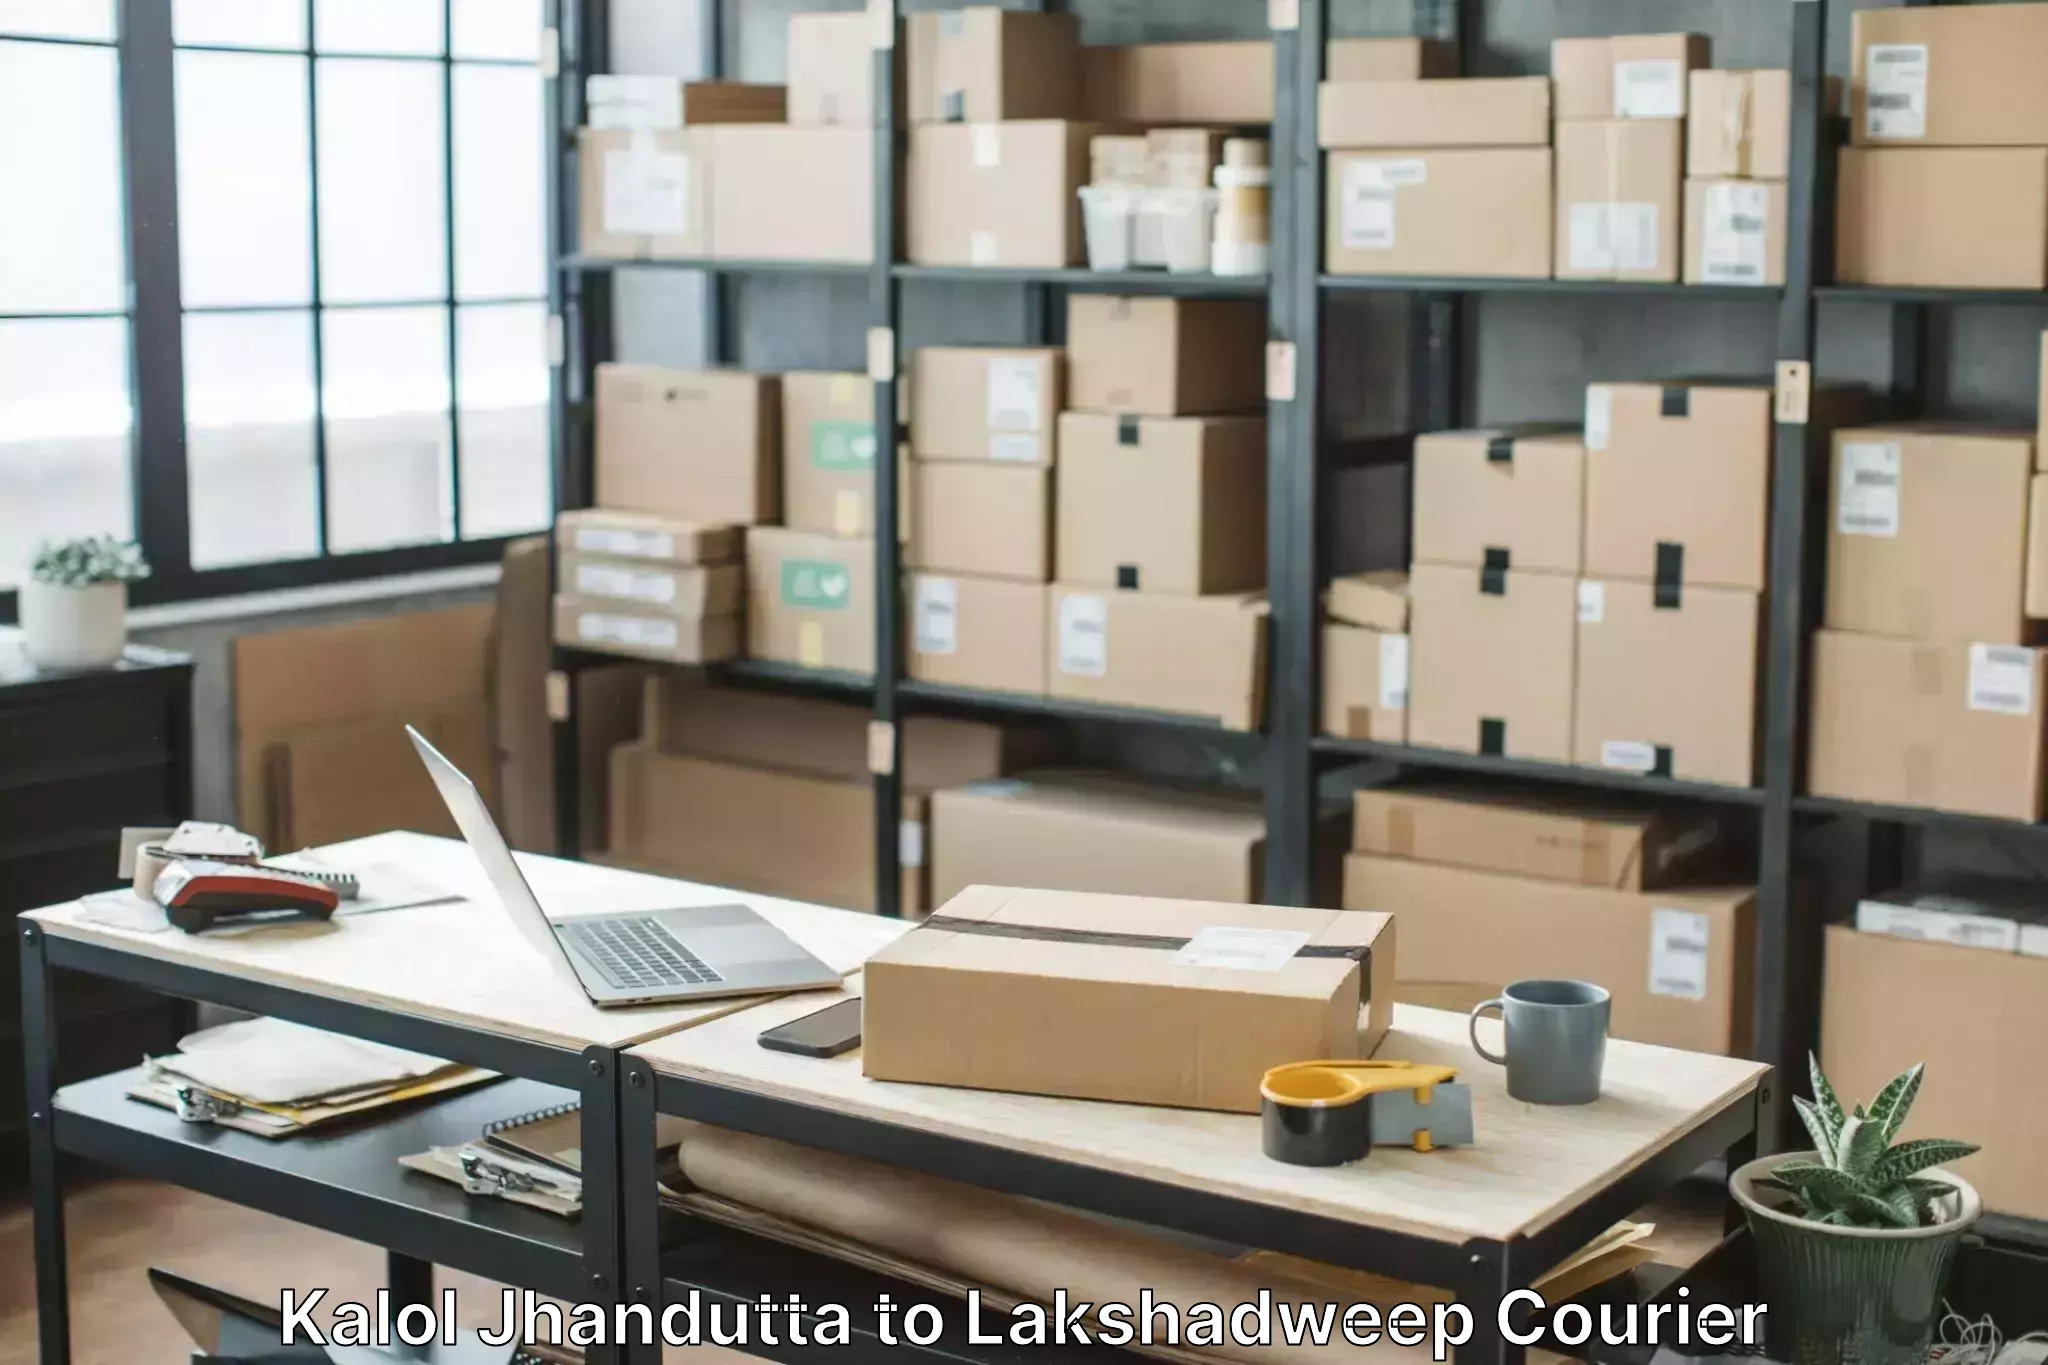 Furniture moving service Kalol Jhandutta to Lakshadweep